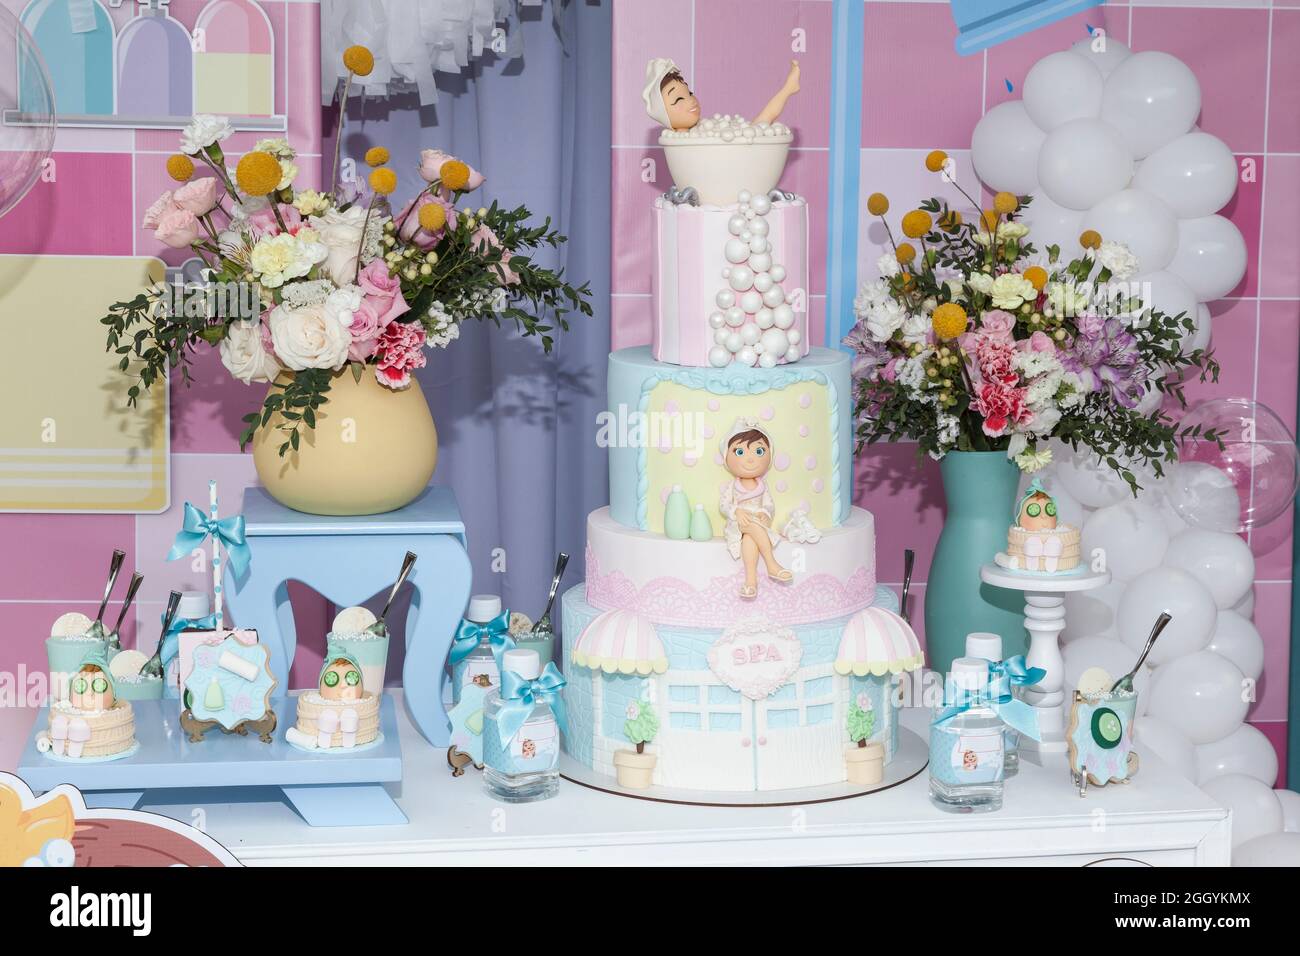 Table de bonbons : gâteau, biscuits et desserts; décoration à thème pour la fête féminine des enfants. Banque D'Images